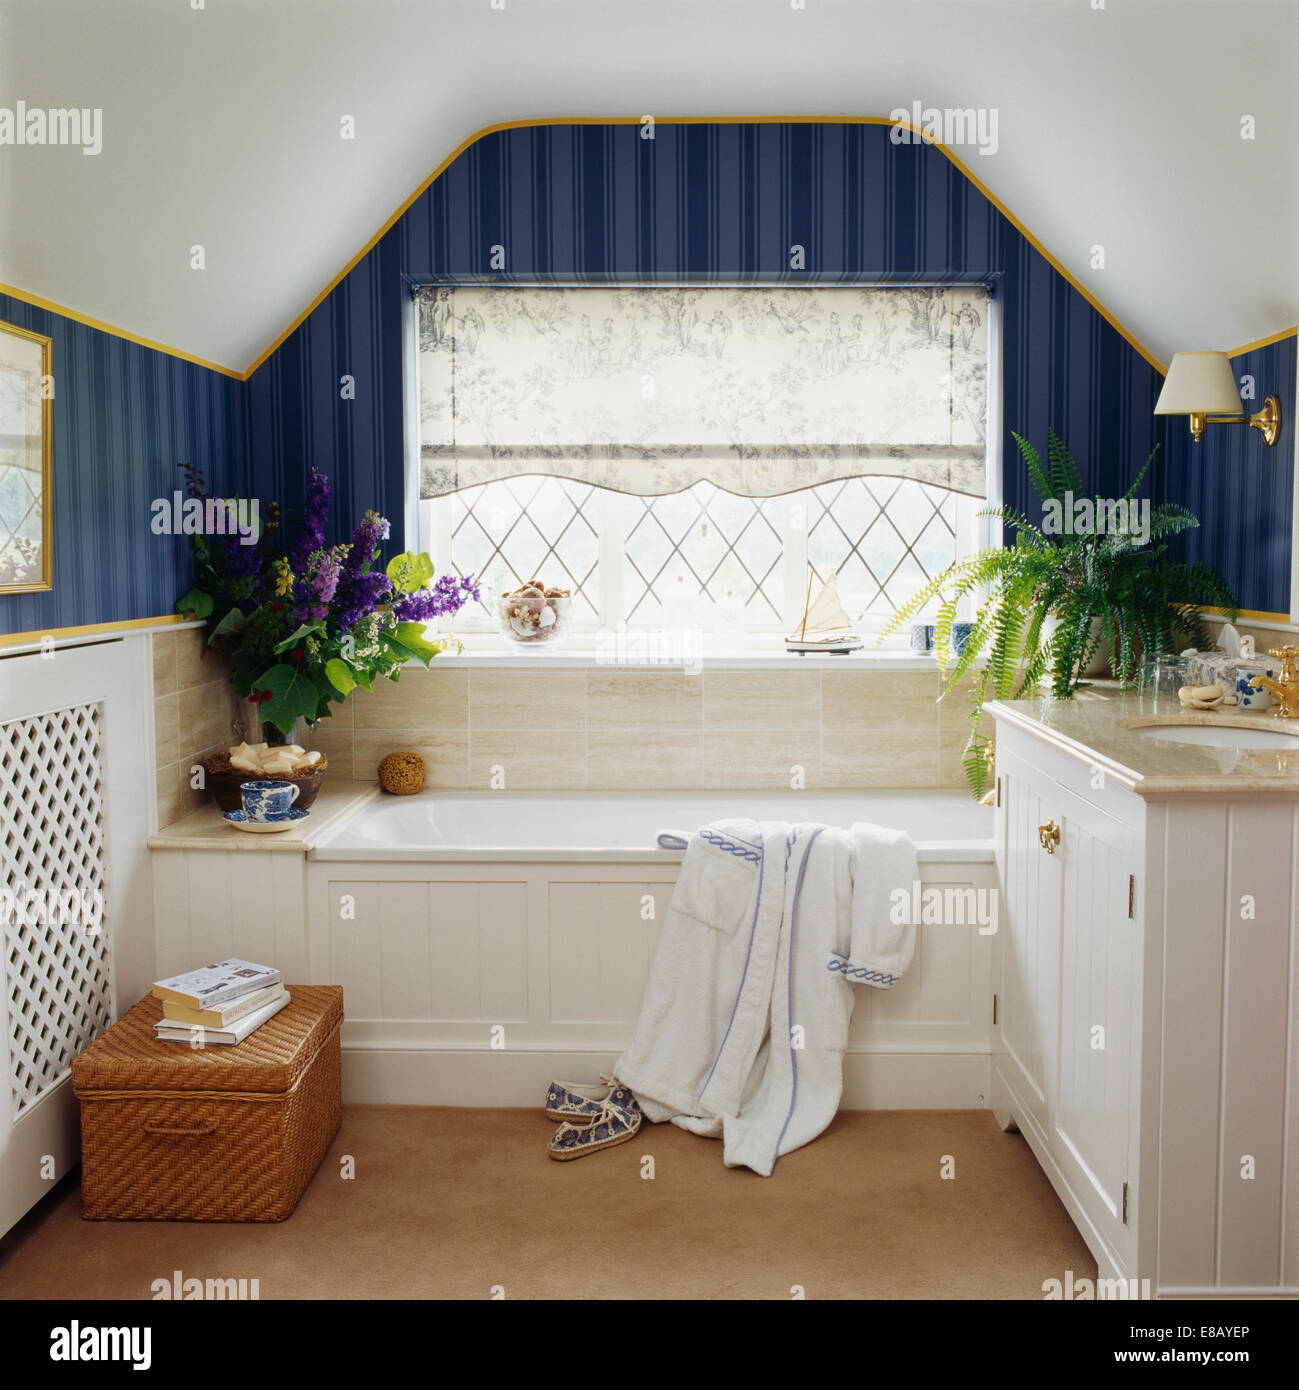 Schiere Blind auf Fenster über Bad im Land Loft Conversion-Schlafzimmer mit dunklen blau gestreifte Tapete Stockfoto